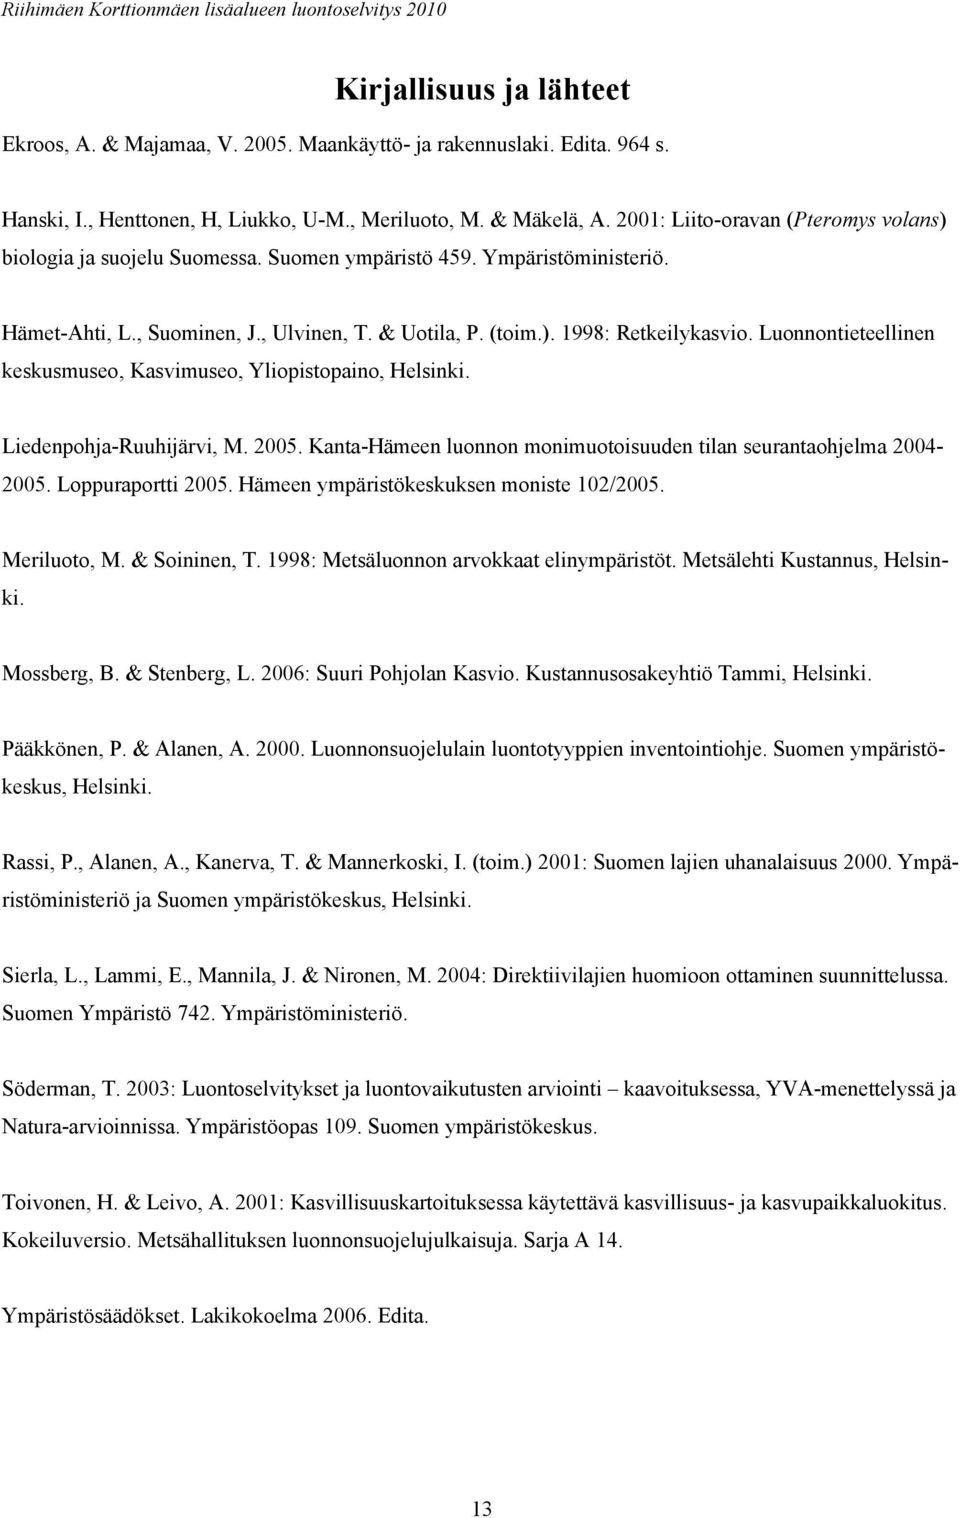 Luonnontieteellinen keskusmuseo, Kasvimuseo, Yliopistopaino, Helsinki. Liedenpohja-Ruuhijärvi, M. 2005. Kanta-Hämeen luonnon monimuotoisuuden tilan seurantaohjelma 2004-2005. Loppuraportti 2005.